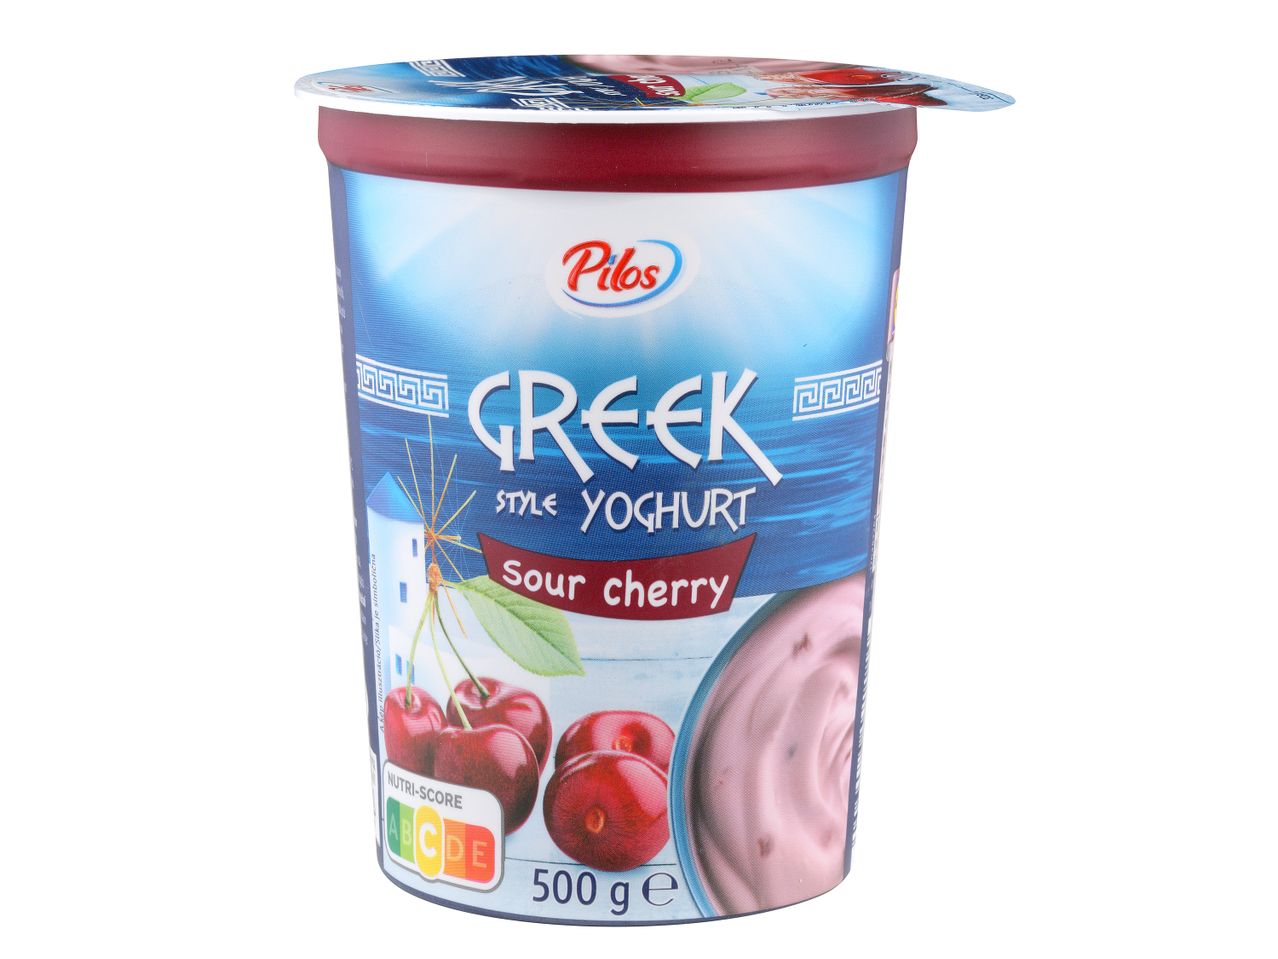 Pojdi na celozaslonski pogled: Sadni jogurt na grški način – Slika 2